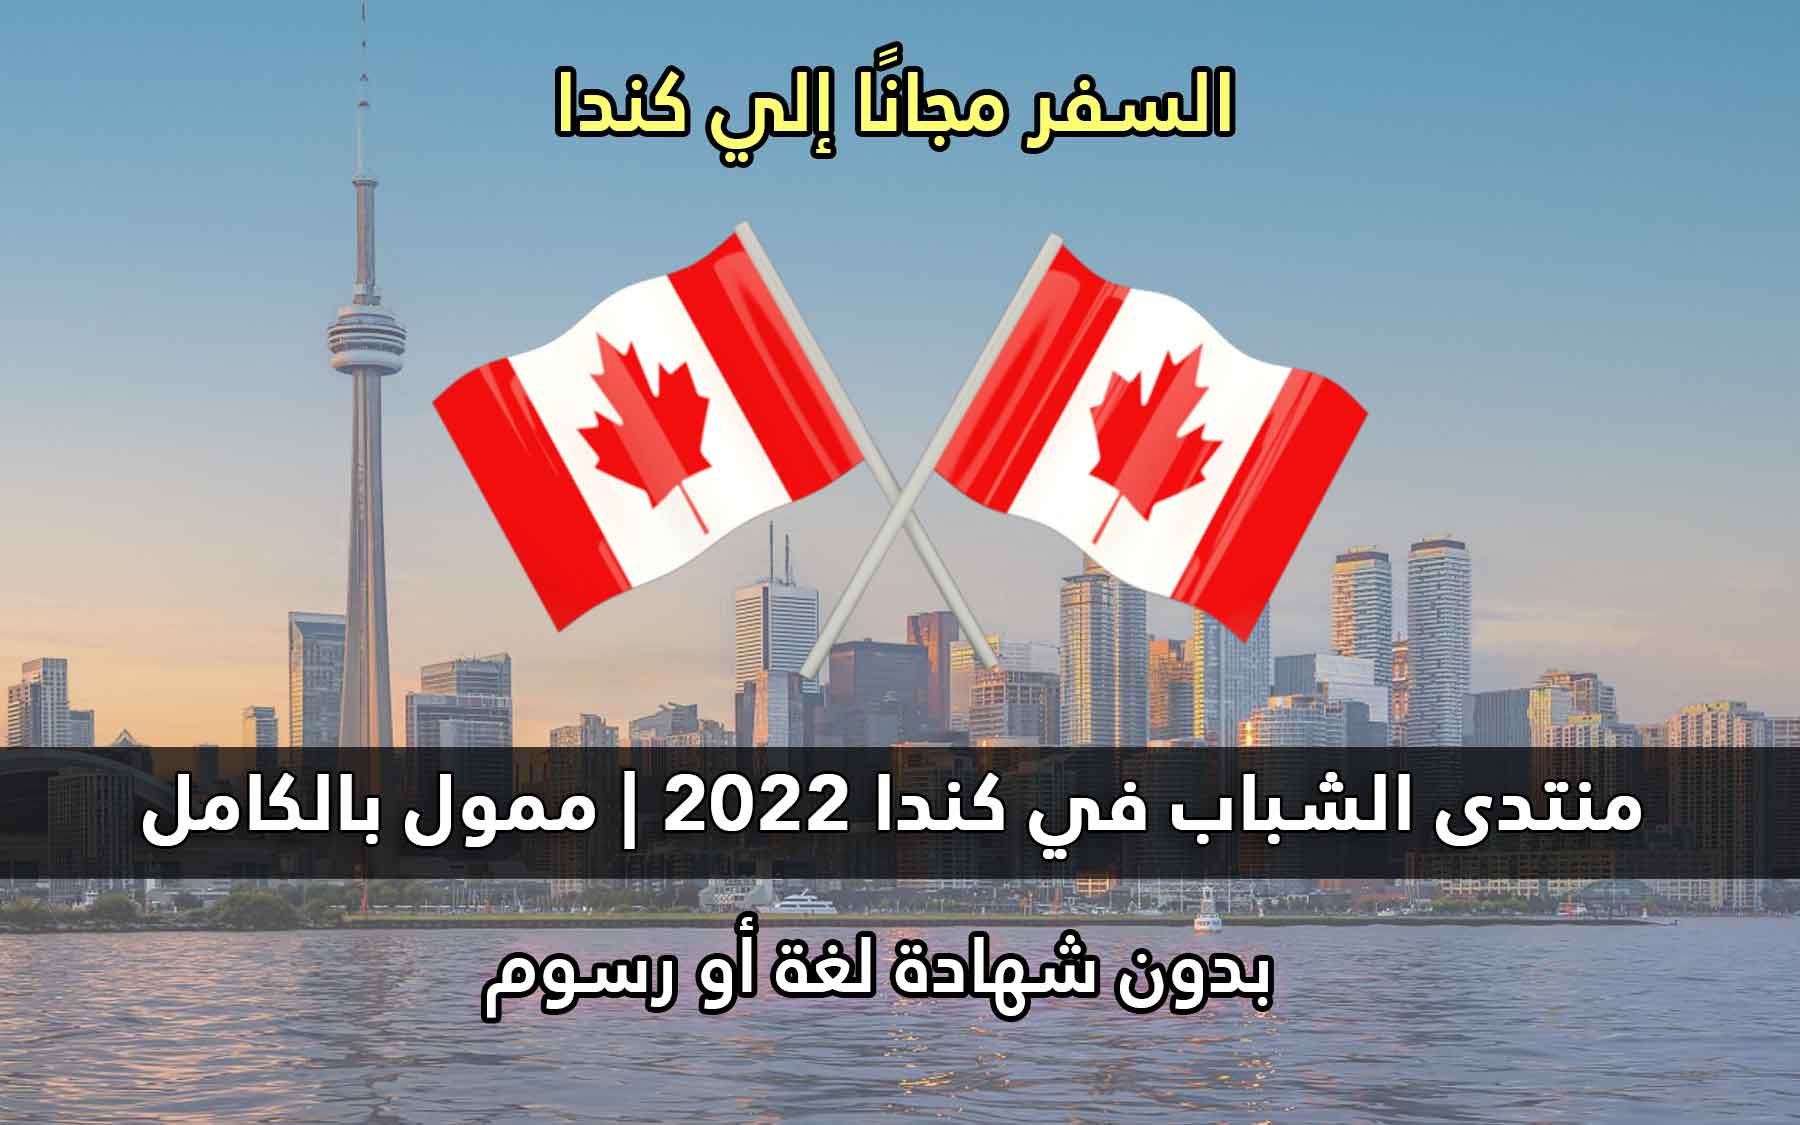 قدم الأن في مؤتمر قمة الشباب في كندا 2022 | ممول بالكامل